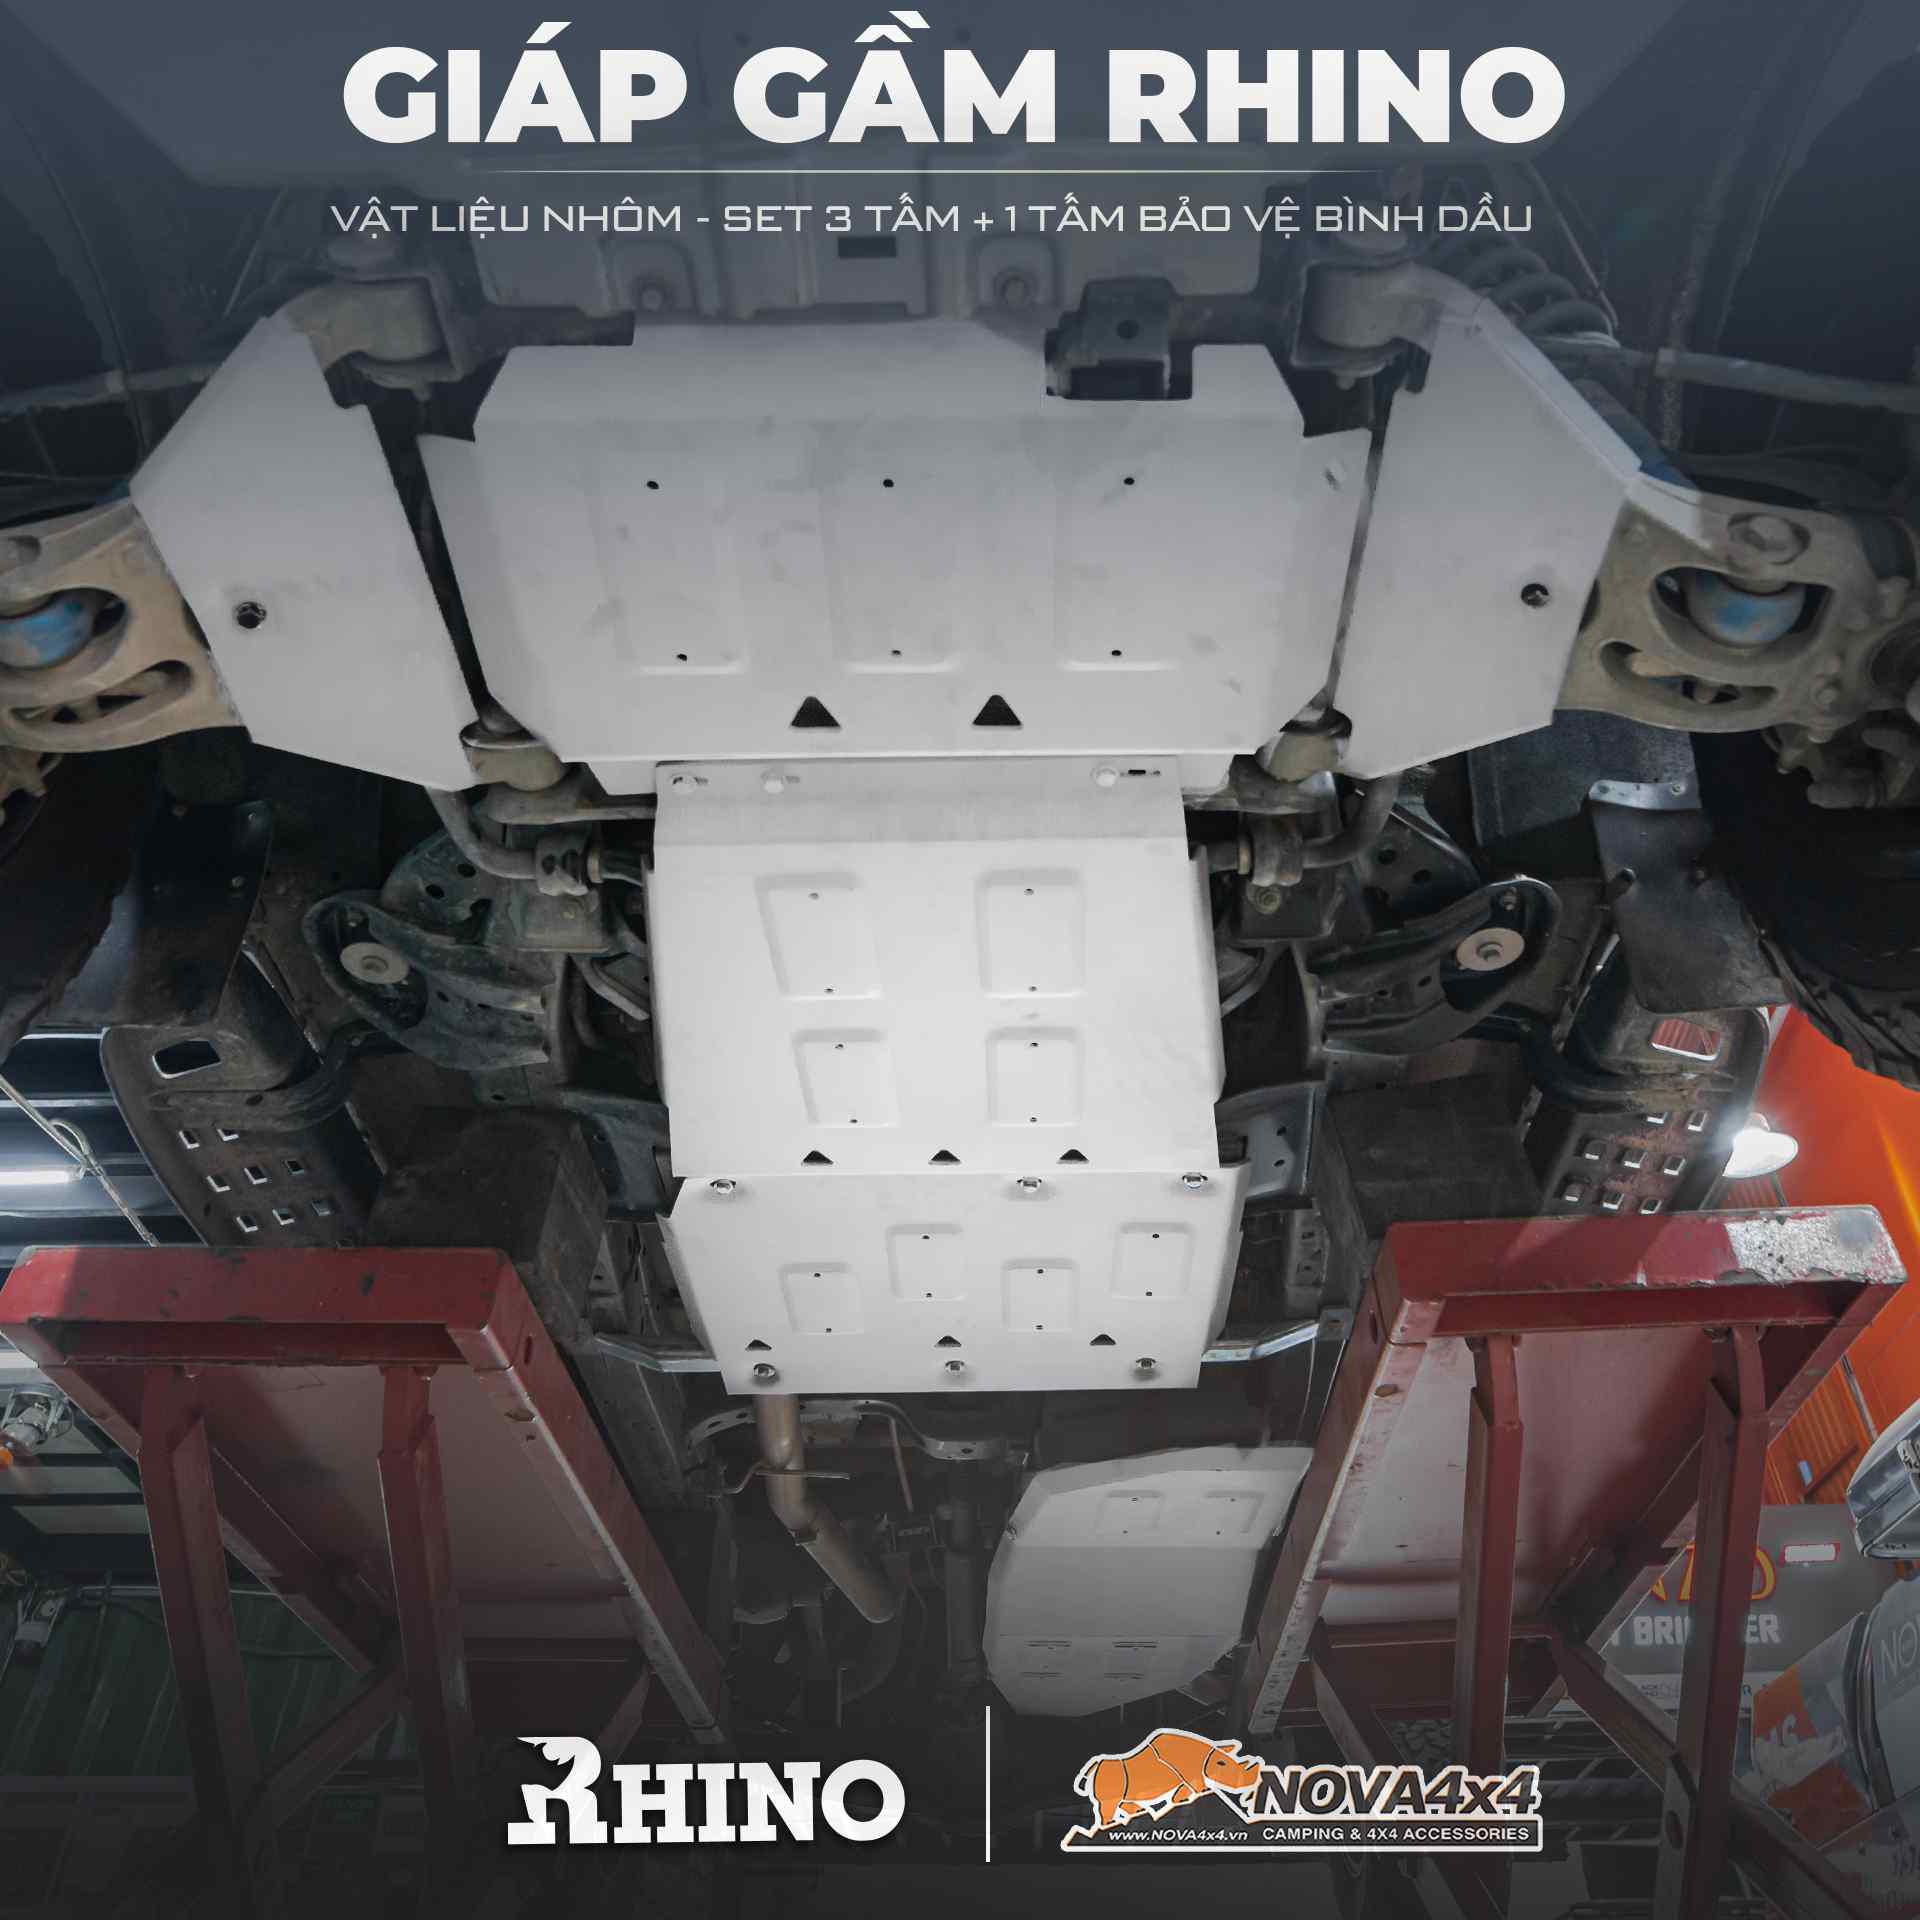 Giáp gầm Rhino giúp bảo vệ hệ thống gầm